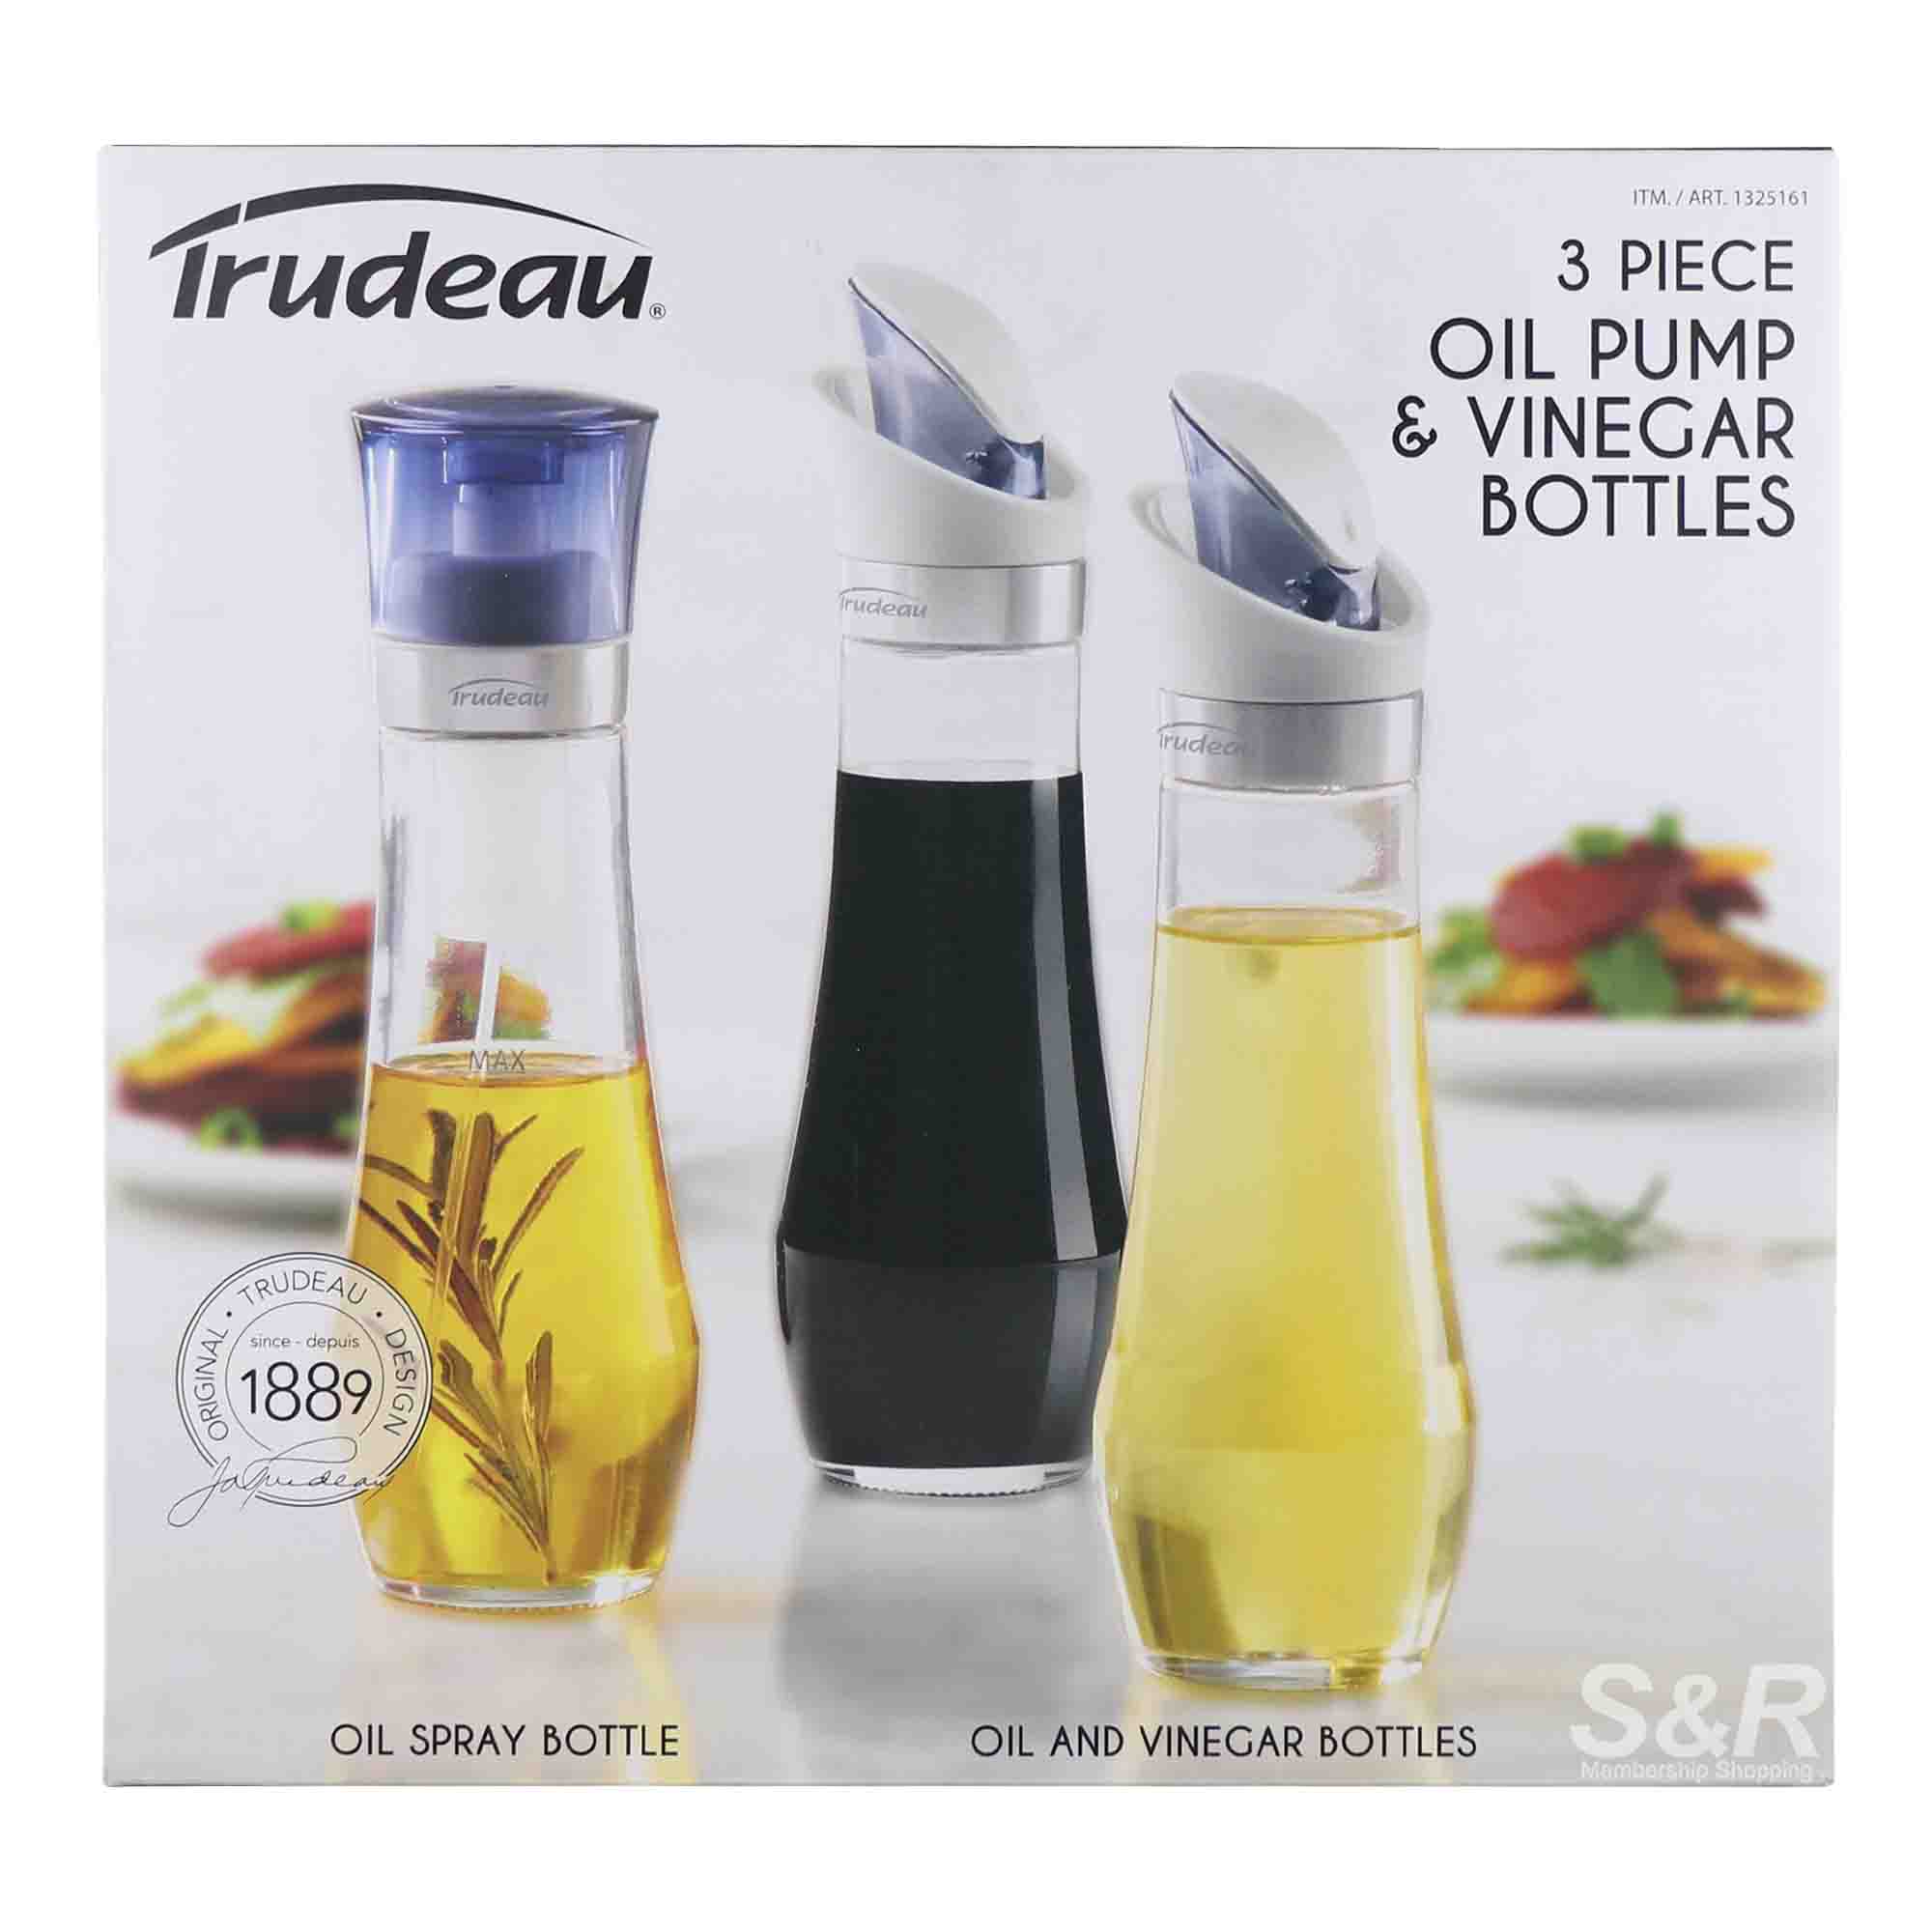 Trudeau Oil Pump & Vinegar Bottles 3pcs